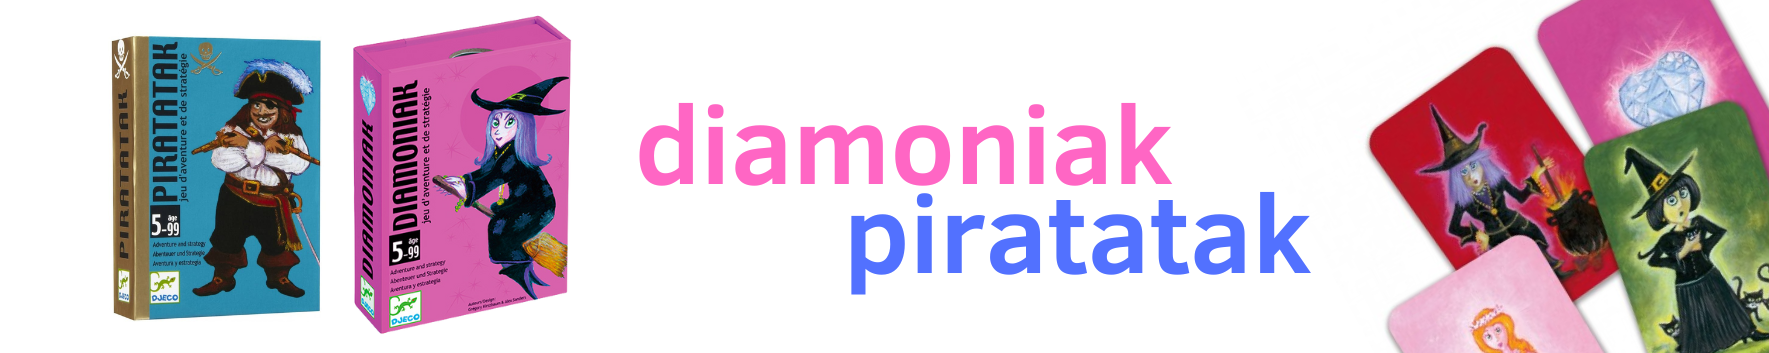 Juegos de cartas: piratatak y diamoniak 